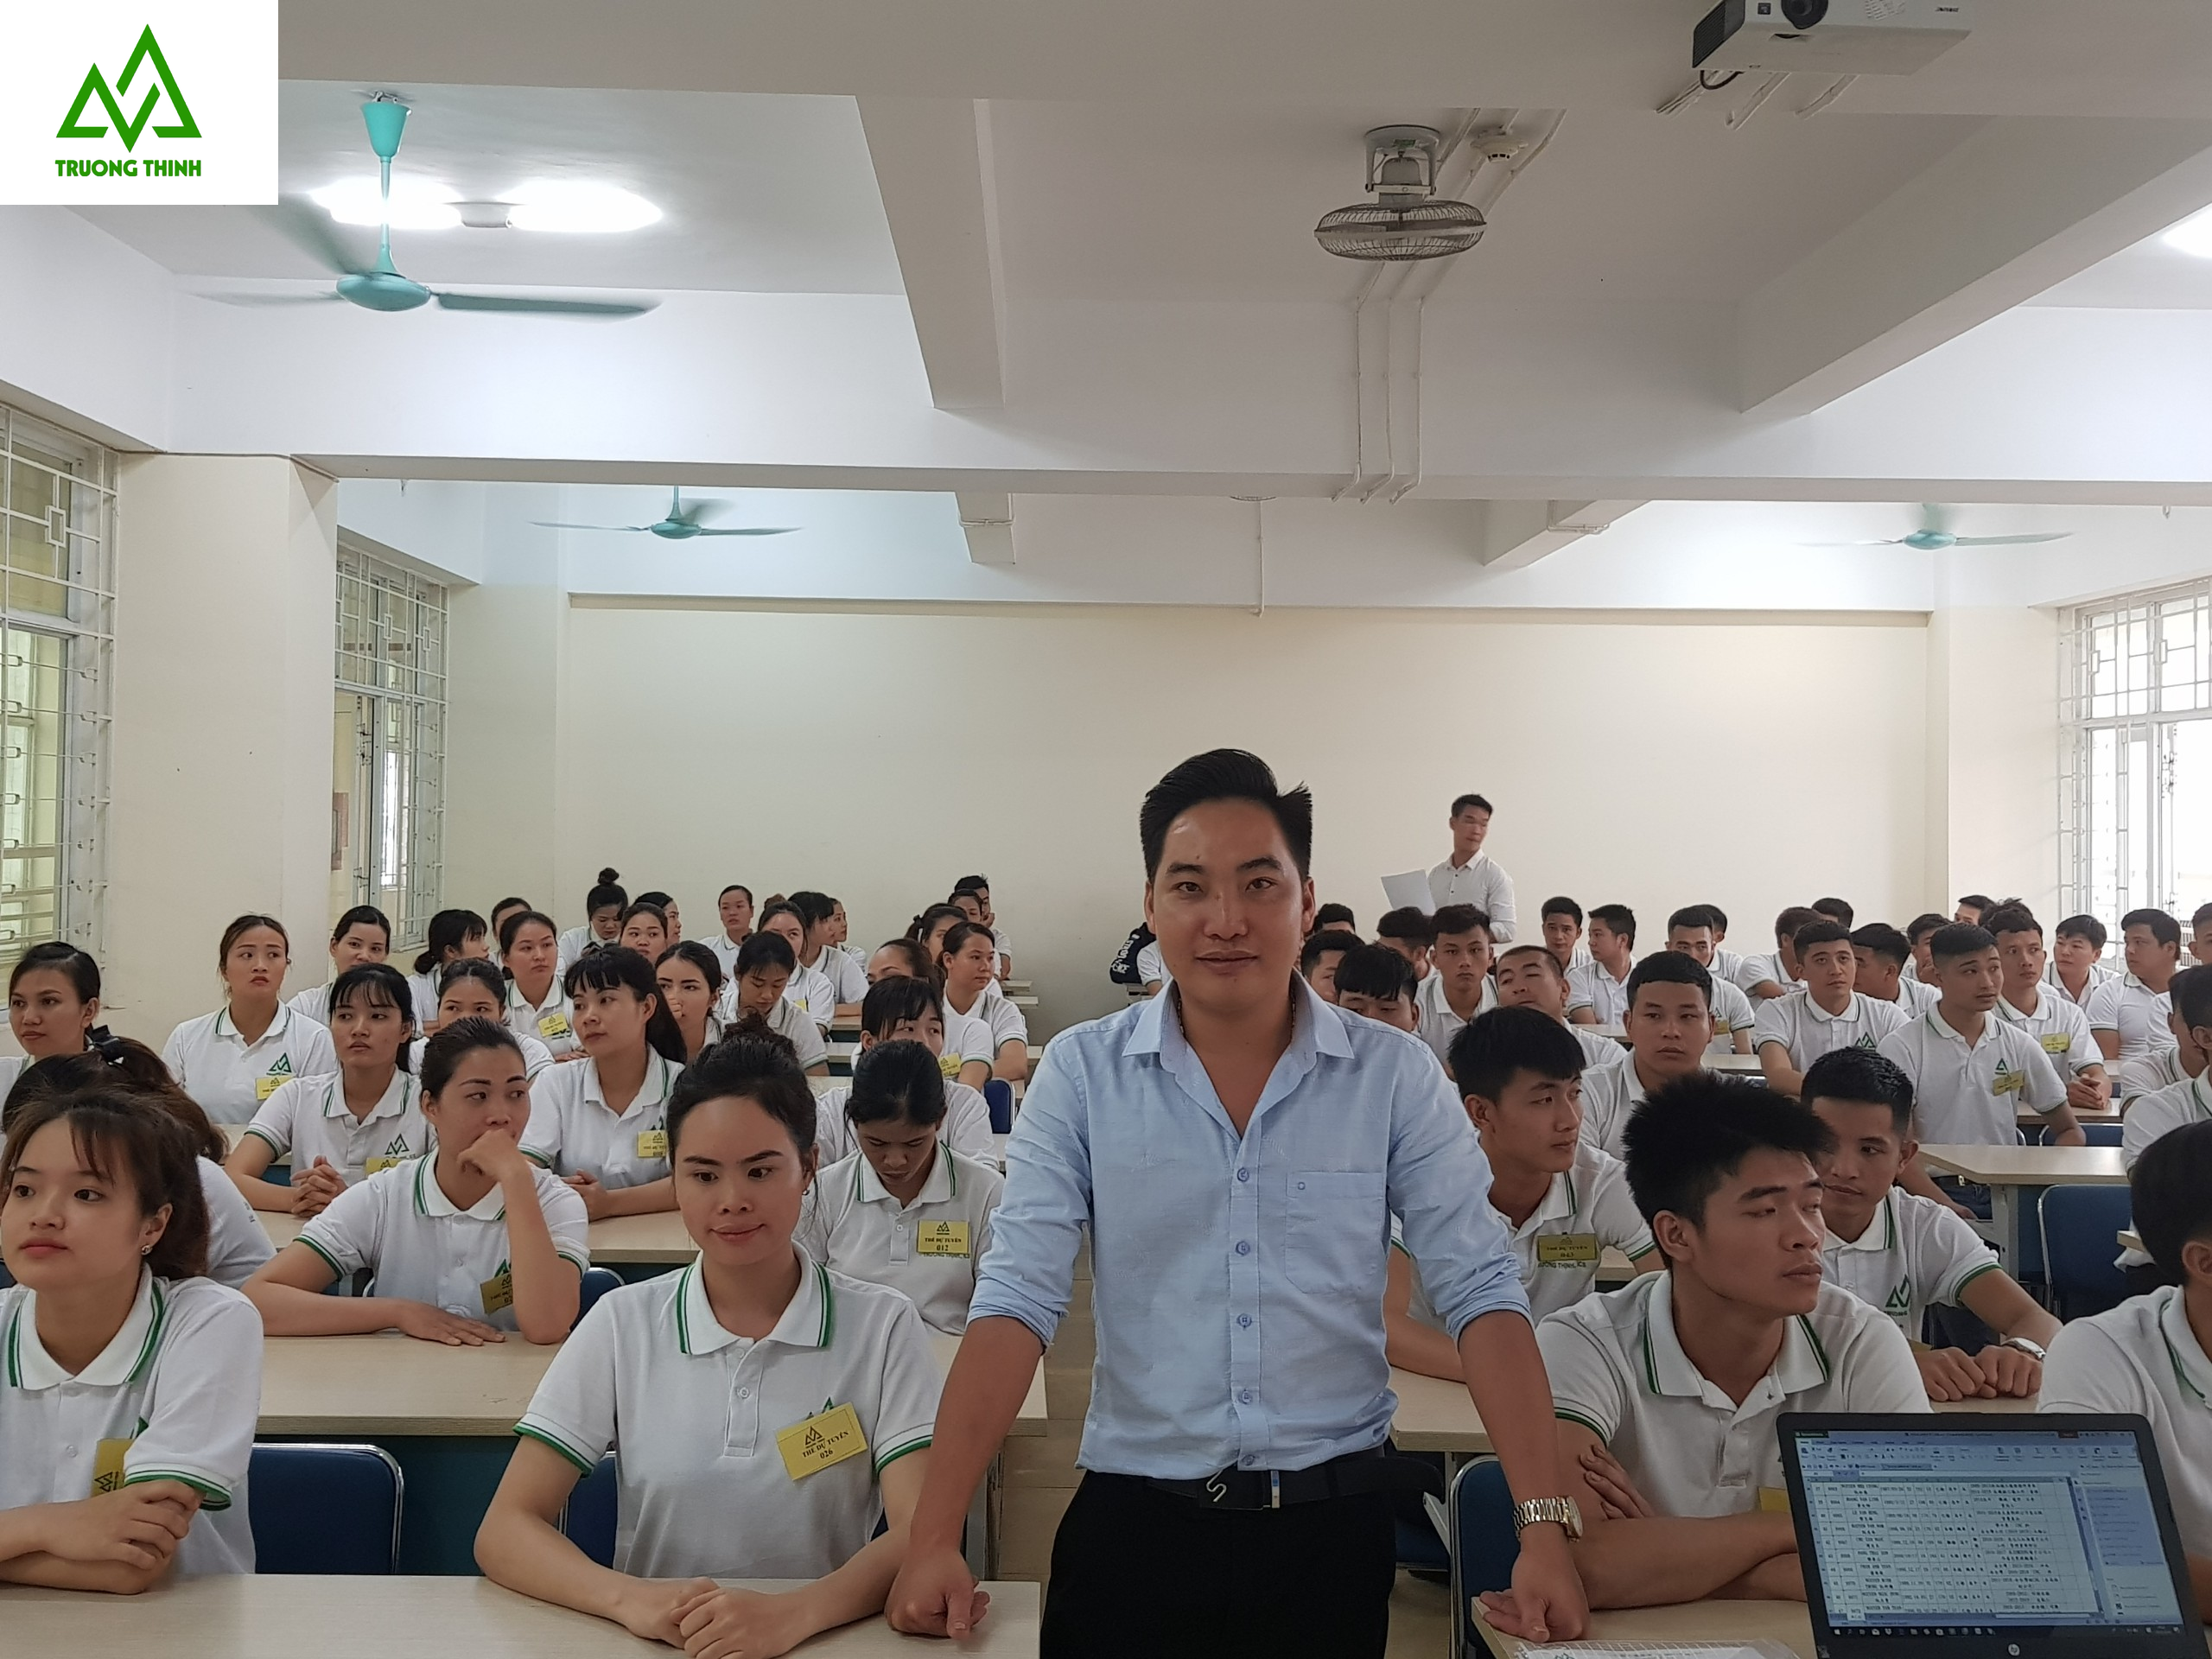 Xuất Khẩu Lao Động Đài Loan Uy Tín 2019 | Trường Thịnh Xklđ